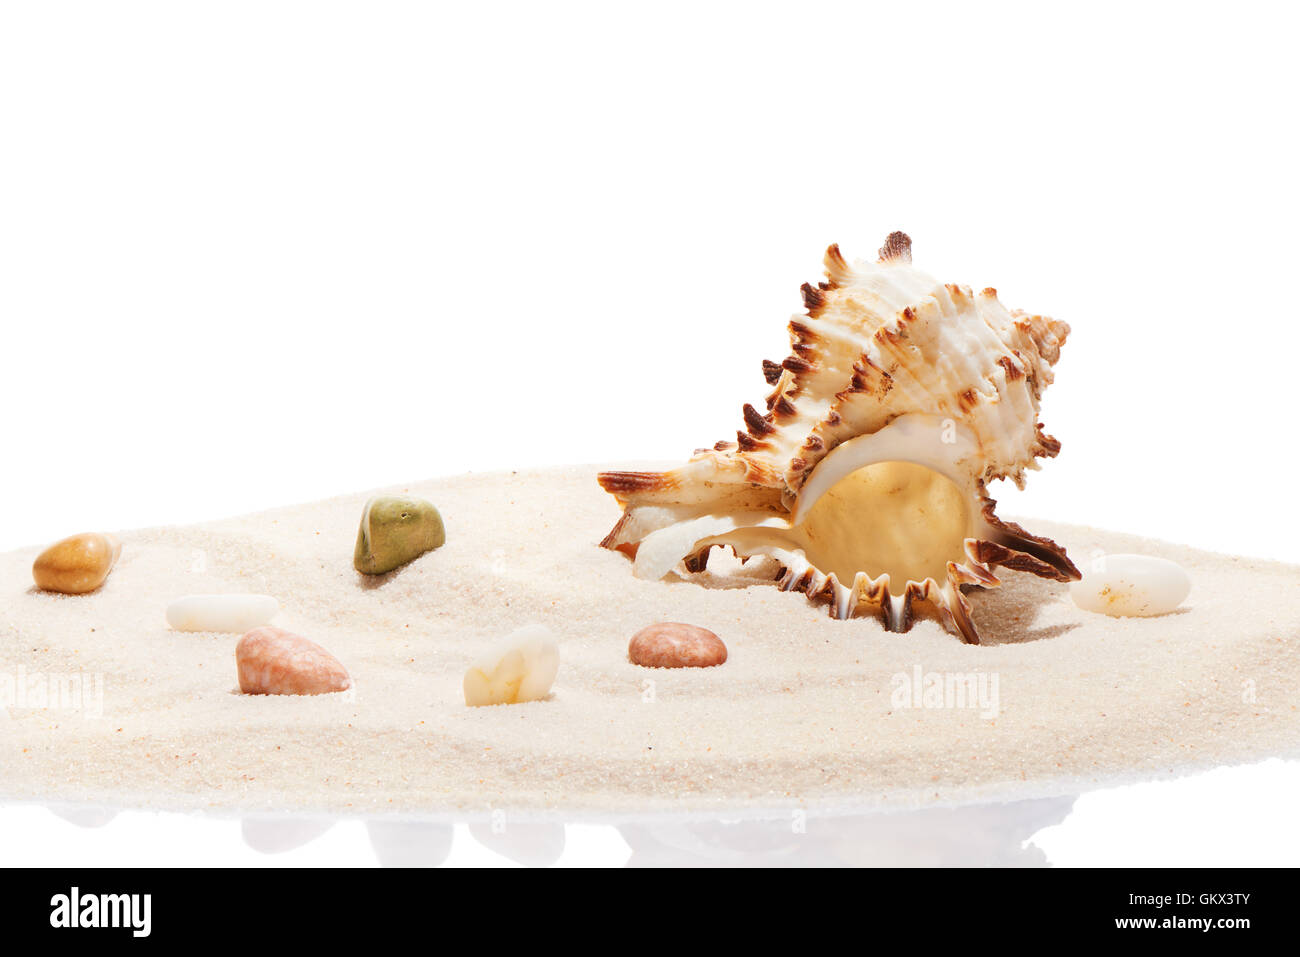 Pierres et mer Seashell on pile de sable de plage, isolé sur fond blanc Banque D'Images